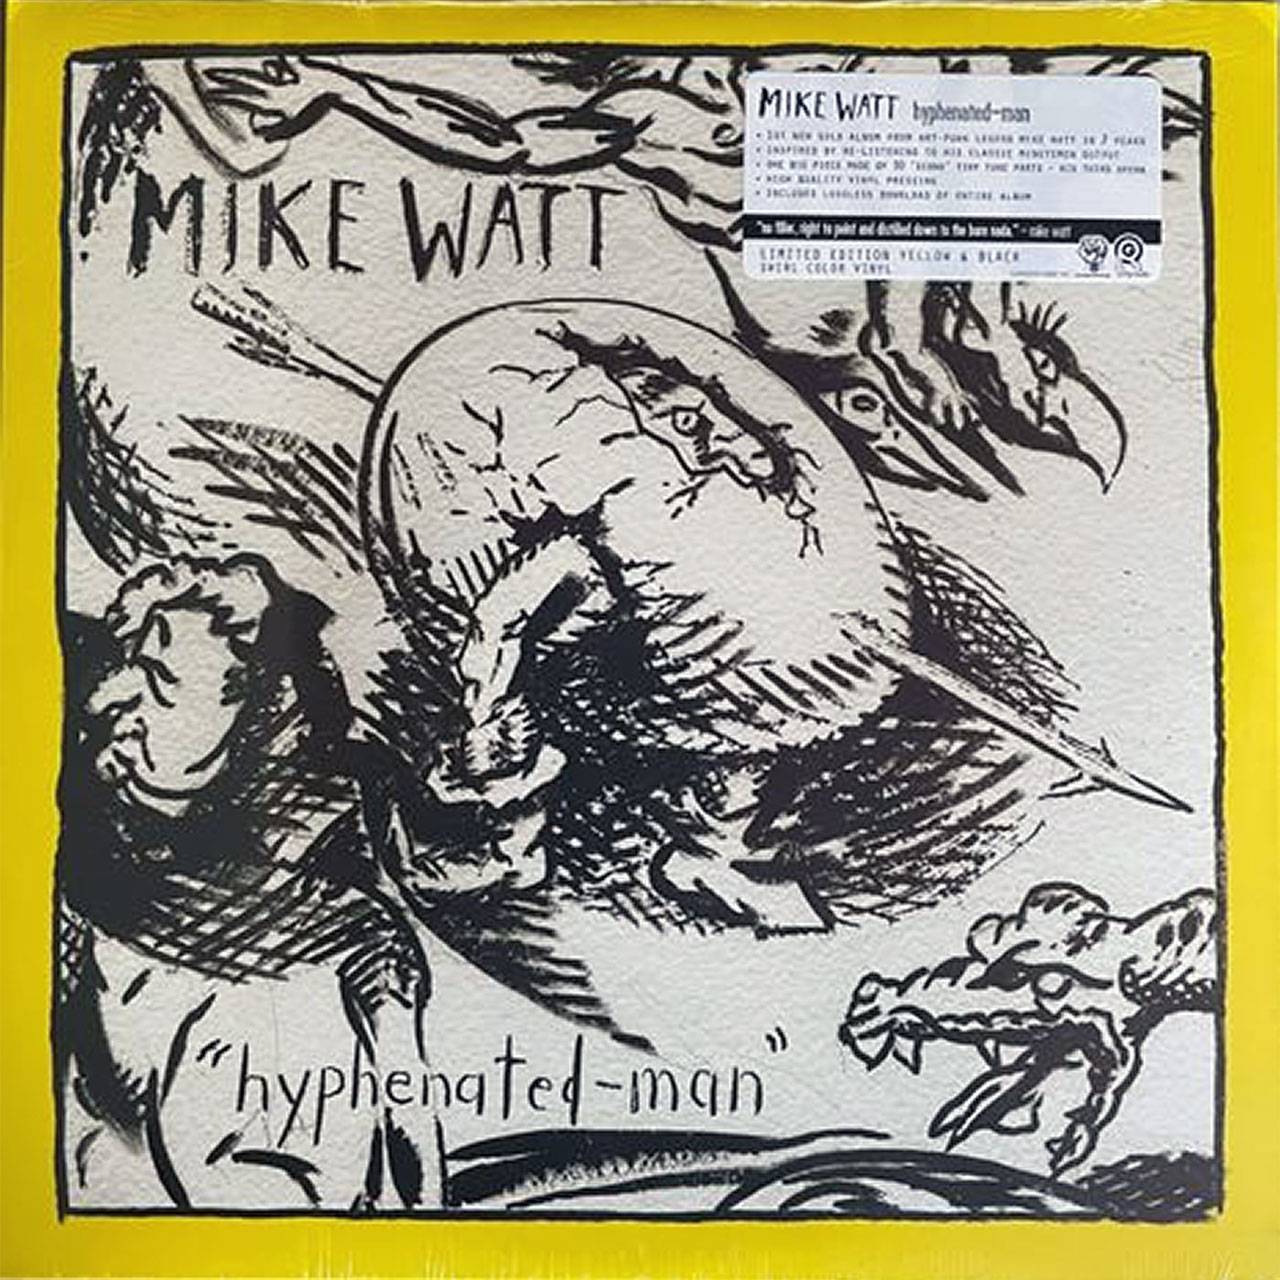 Mike Watt - "Hyphenated-Man" Ltd. Ed. Yellow Swirl